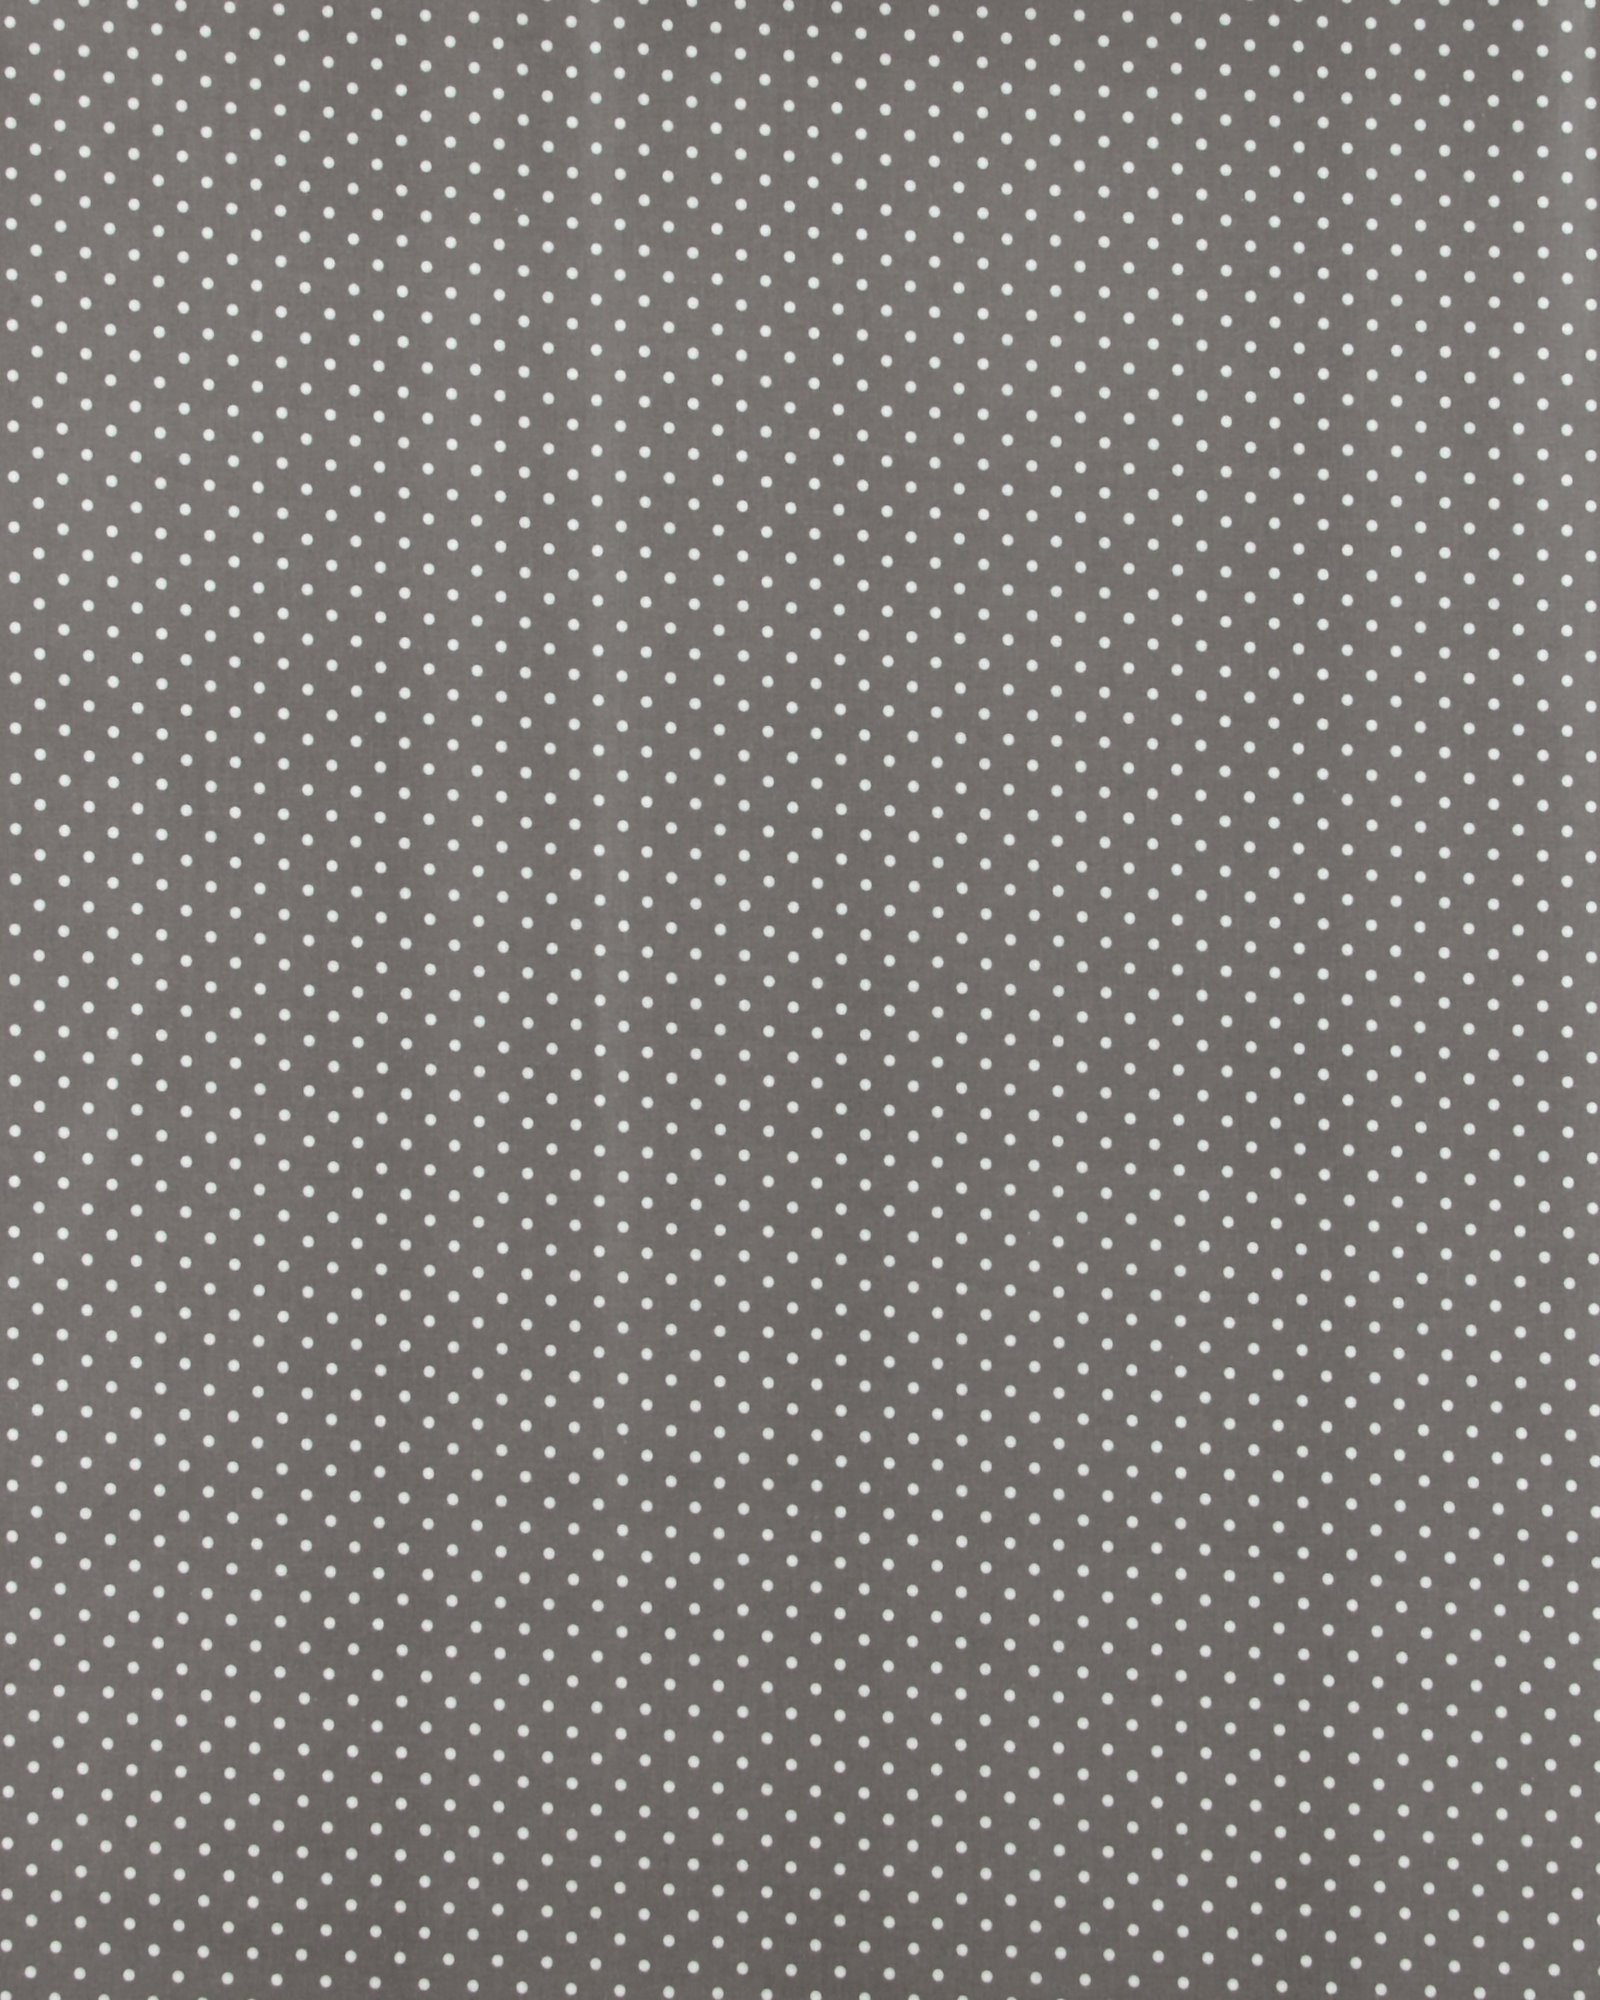 Textilwachstuch m/Punkten Grau/Weiß 860485_pack_sp